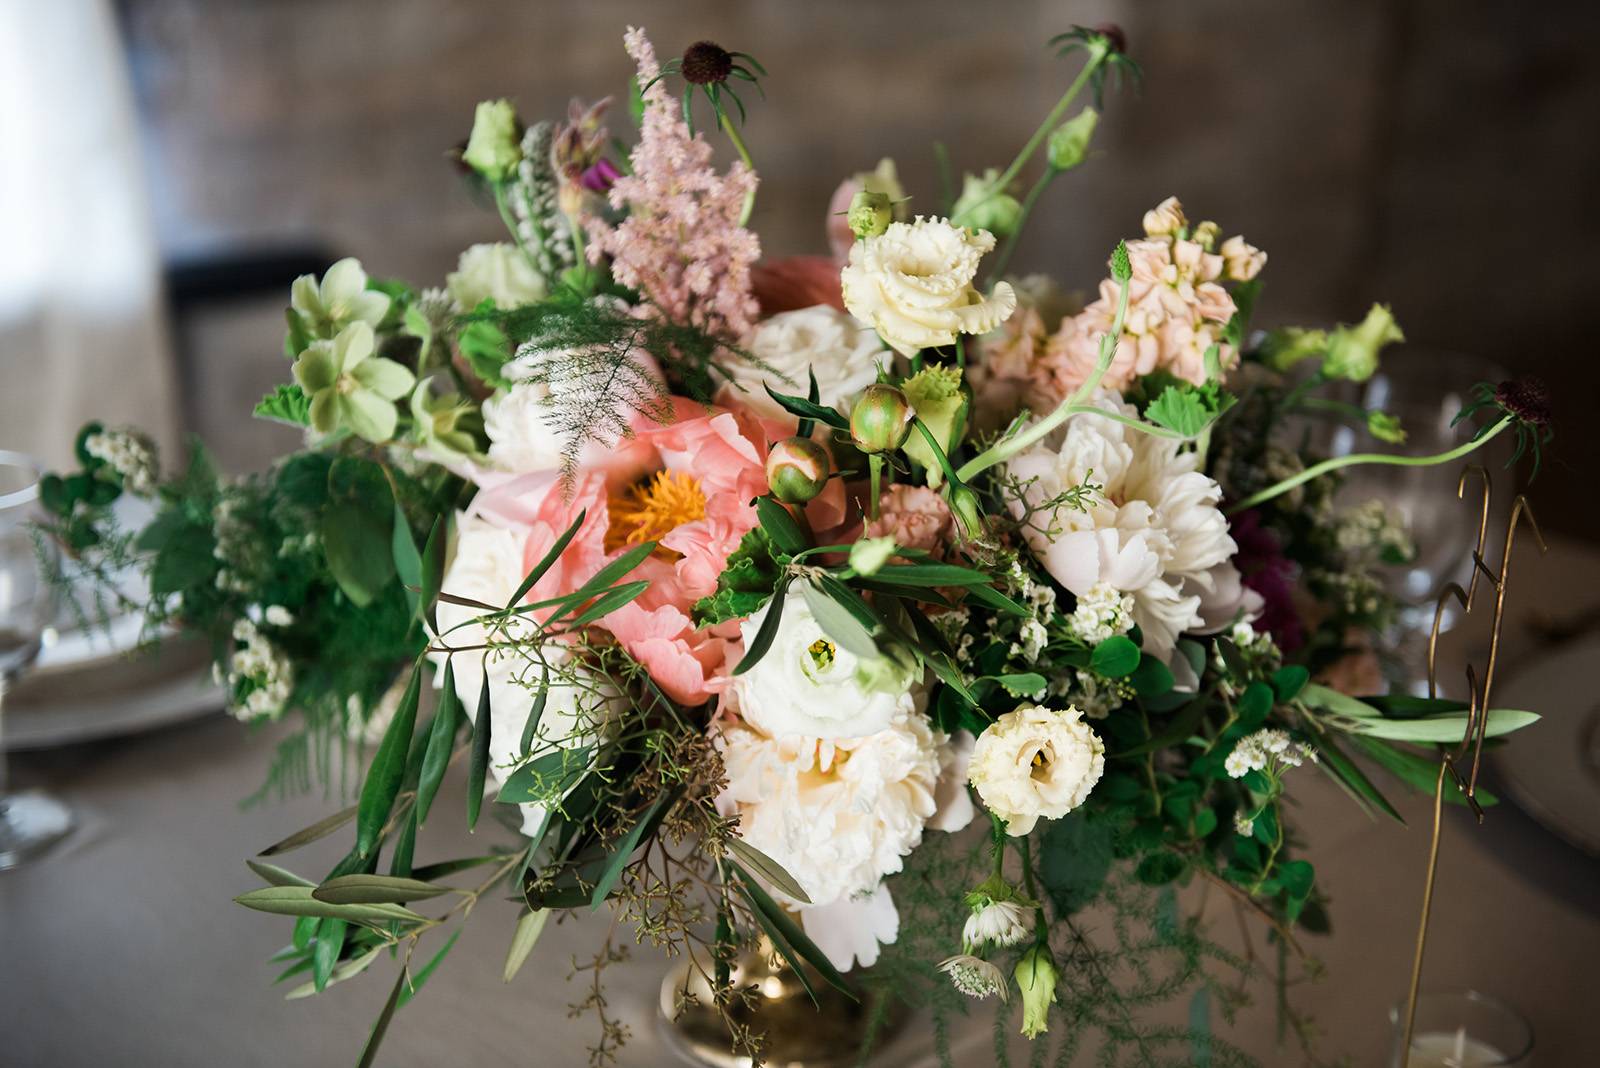 wisconsin florist wedding centerpiece centerpieces whimsical garden peach white  flowers